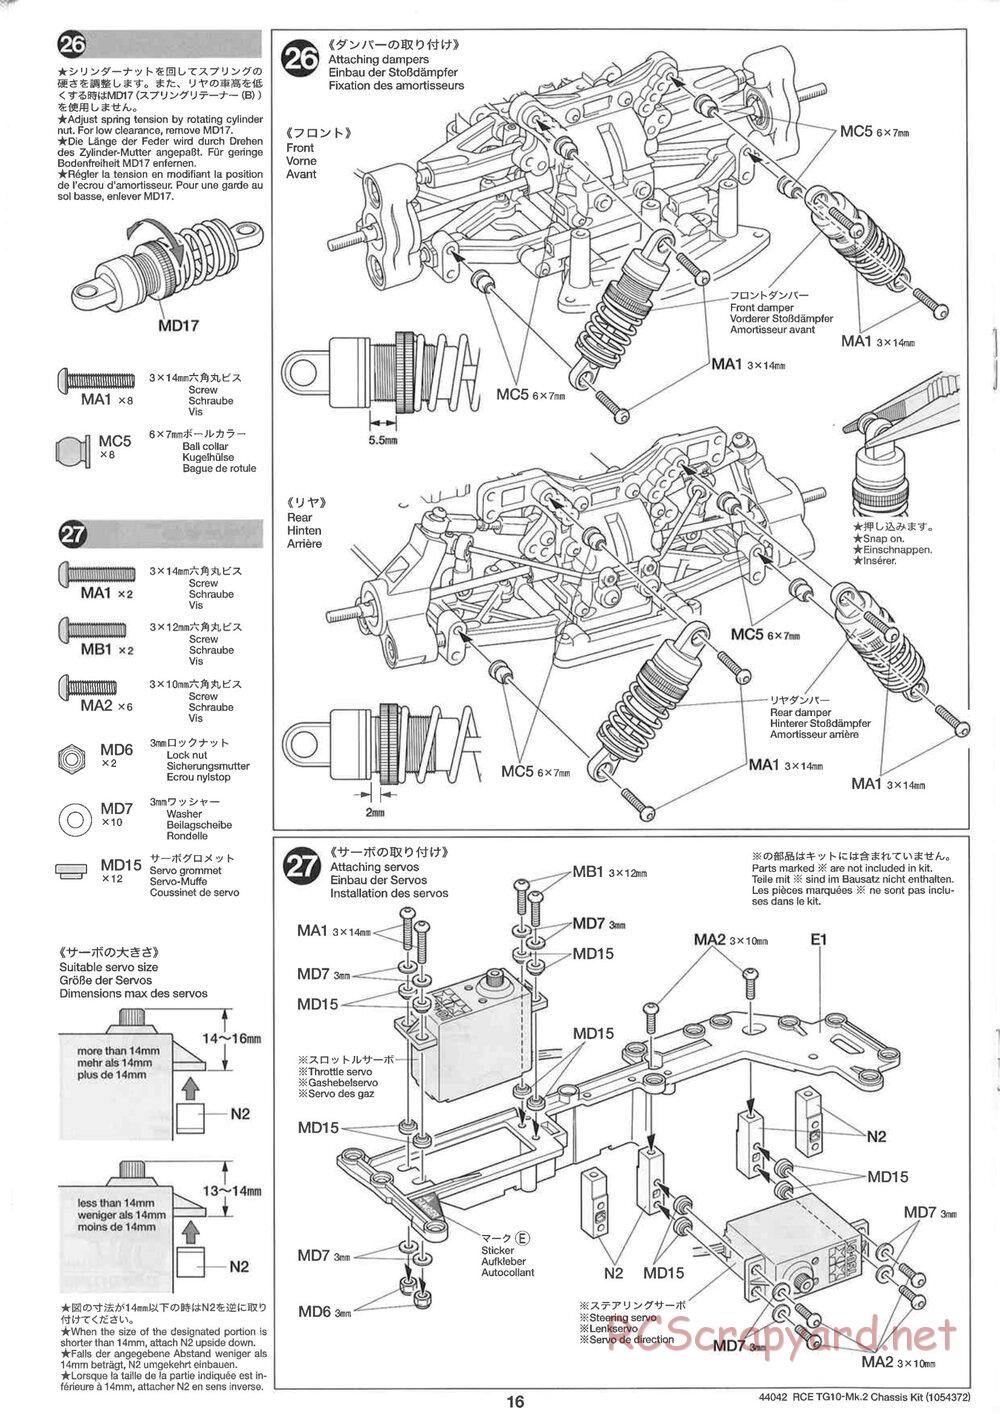 Tamiya - TG10 Mk.2 Chassis - Manual - Page 16